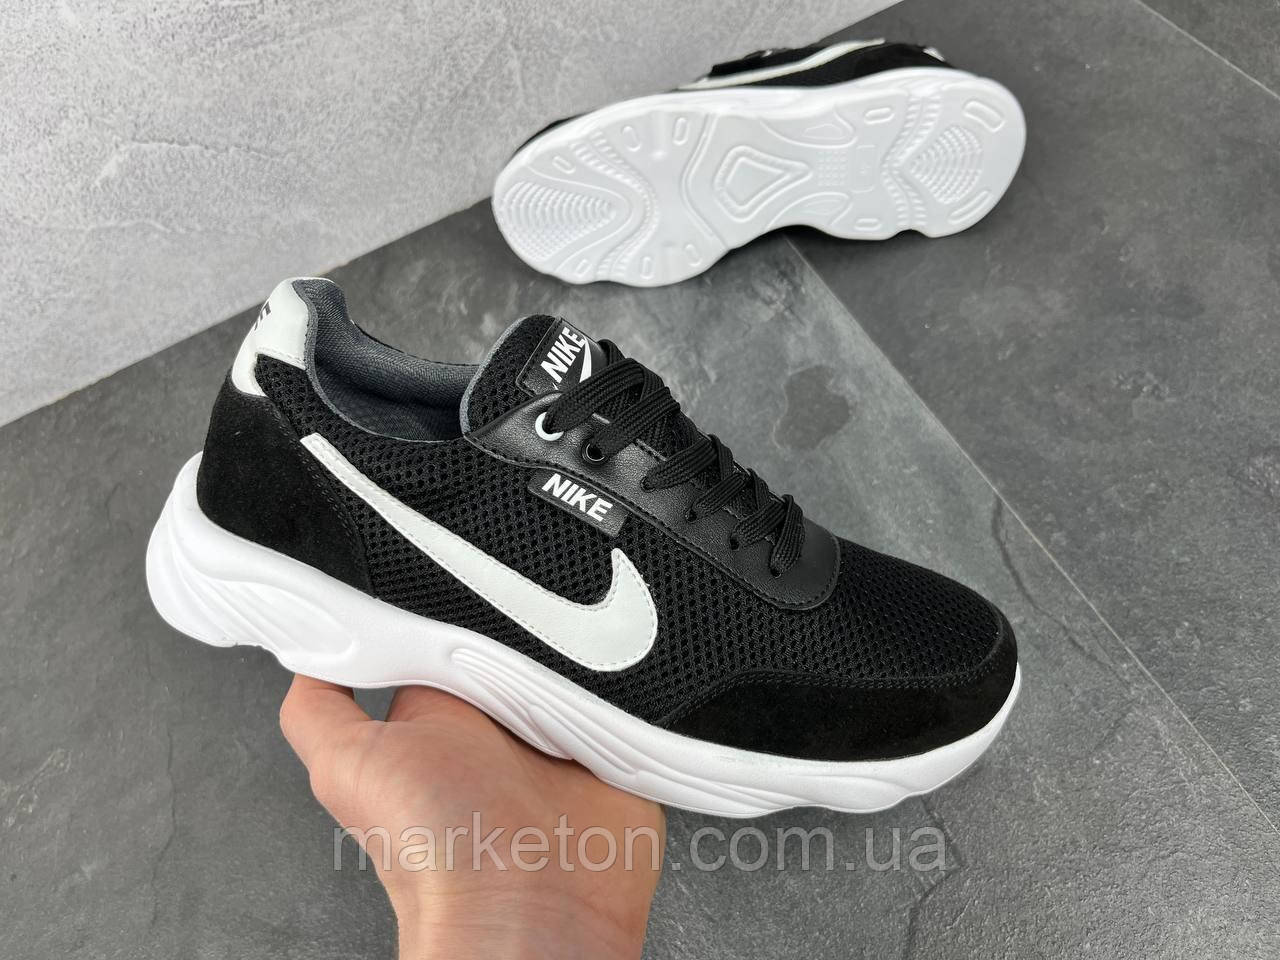 Чоловічі повсякденні кросівки натуральні Чорно-білі Nike